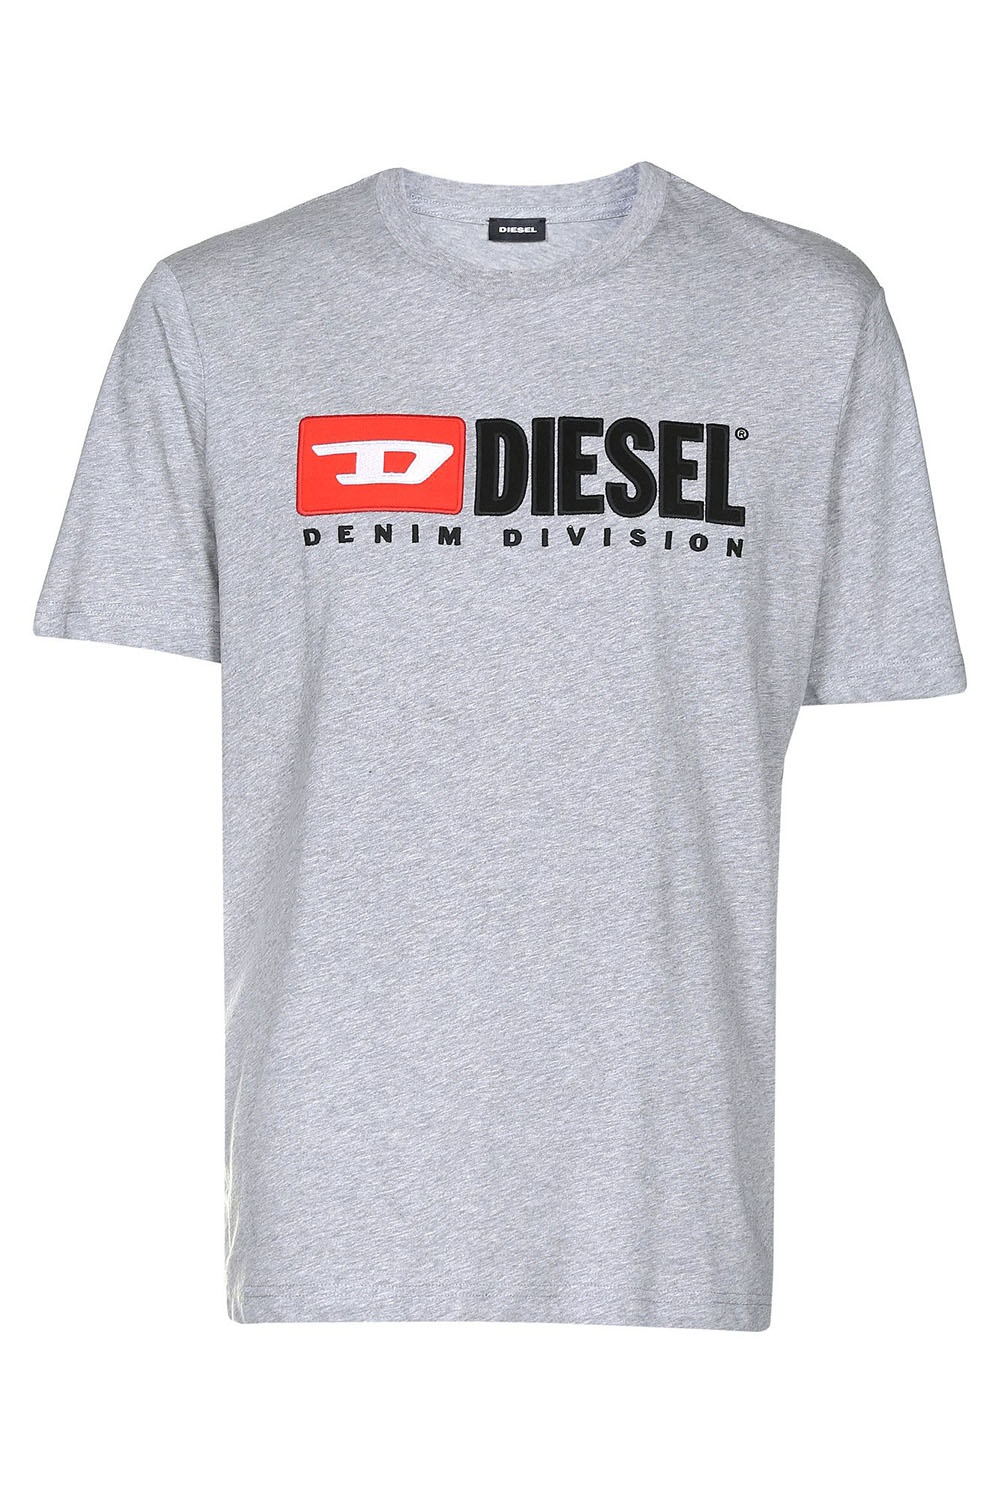 Diesel Solid Color Logo Printed Men's T-Shirt | Odel.lk